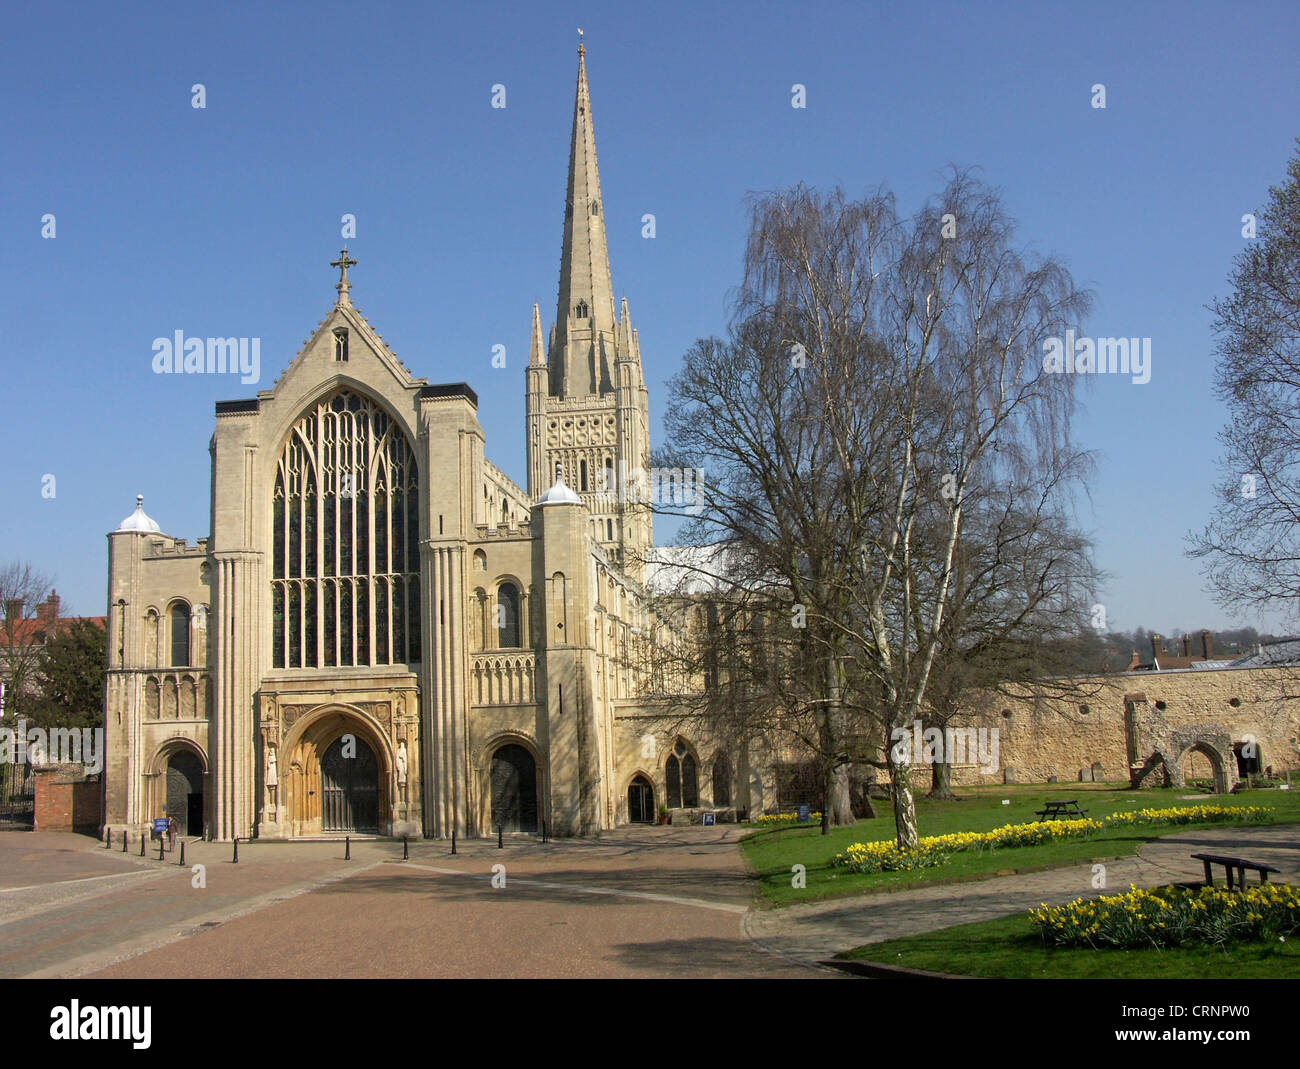 La magnifica cattedrale di Norwich vanta la seconda guglia più alta in Inghilterra. Foto Stock